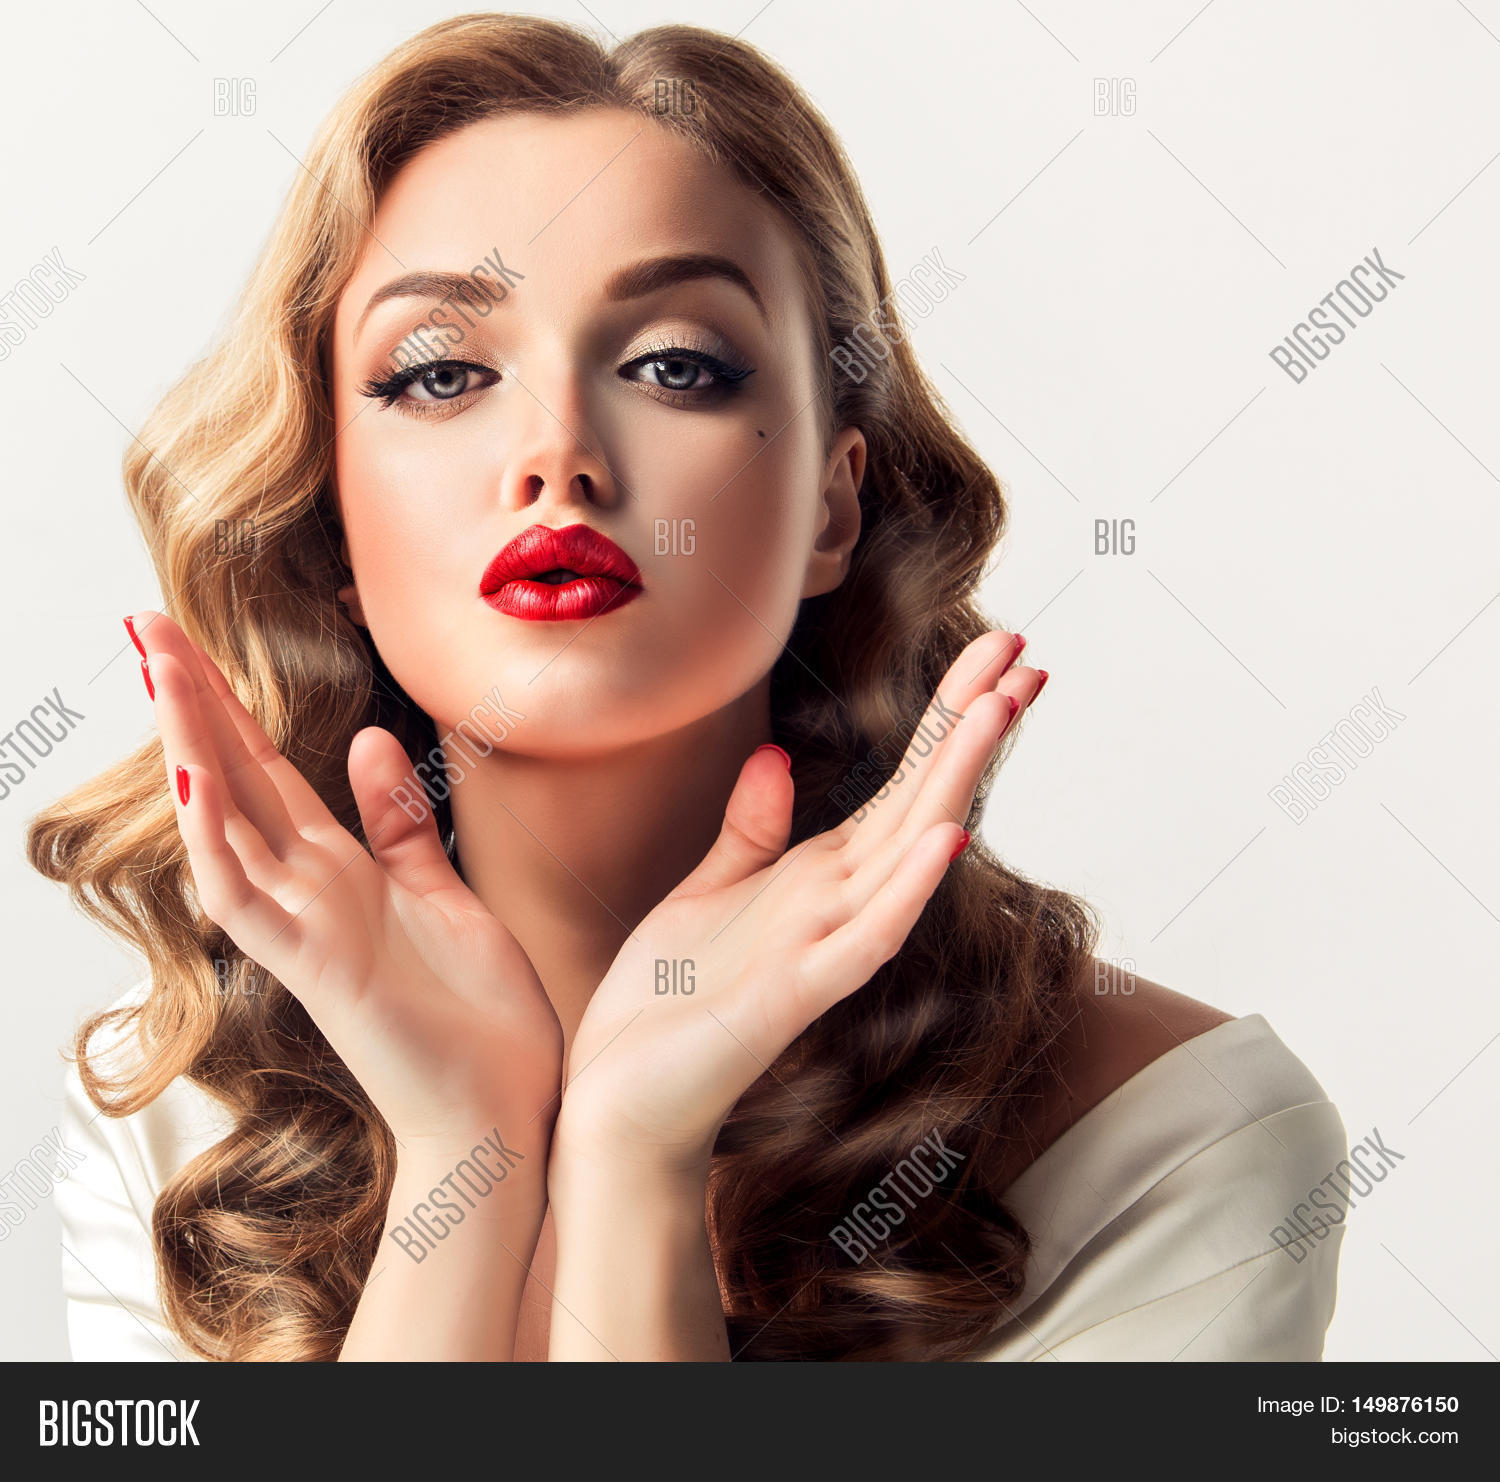 Beautiful Woman Looks Like Star Image & Photo | Bigstock